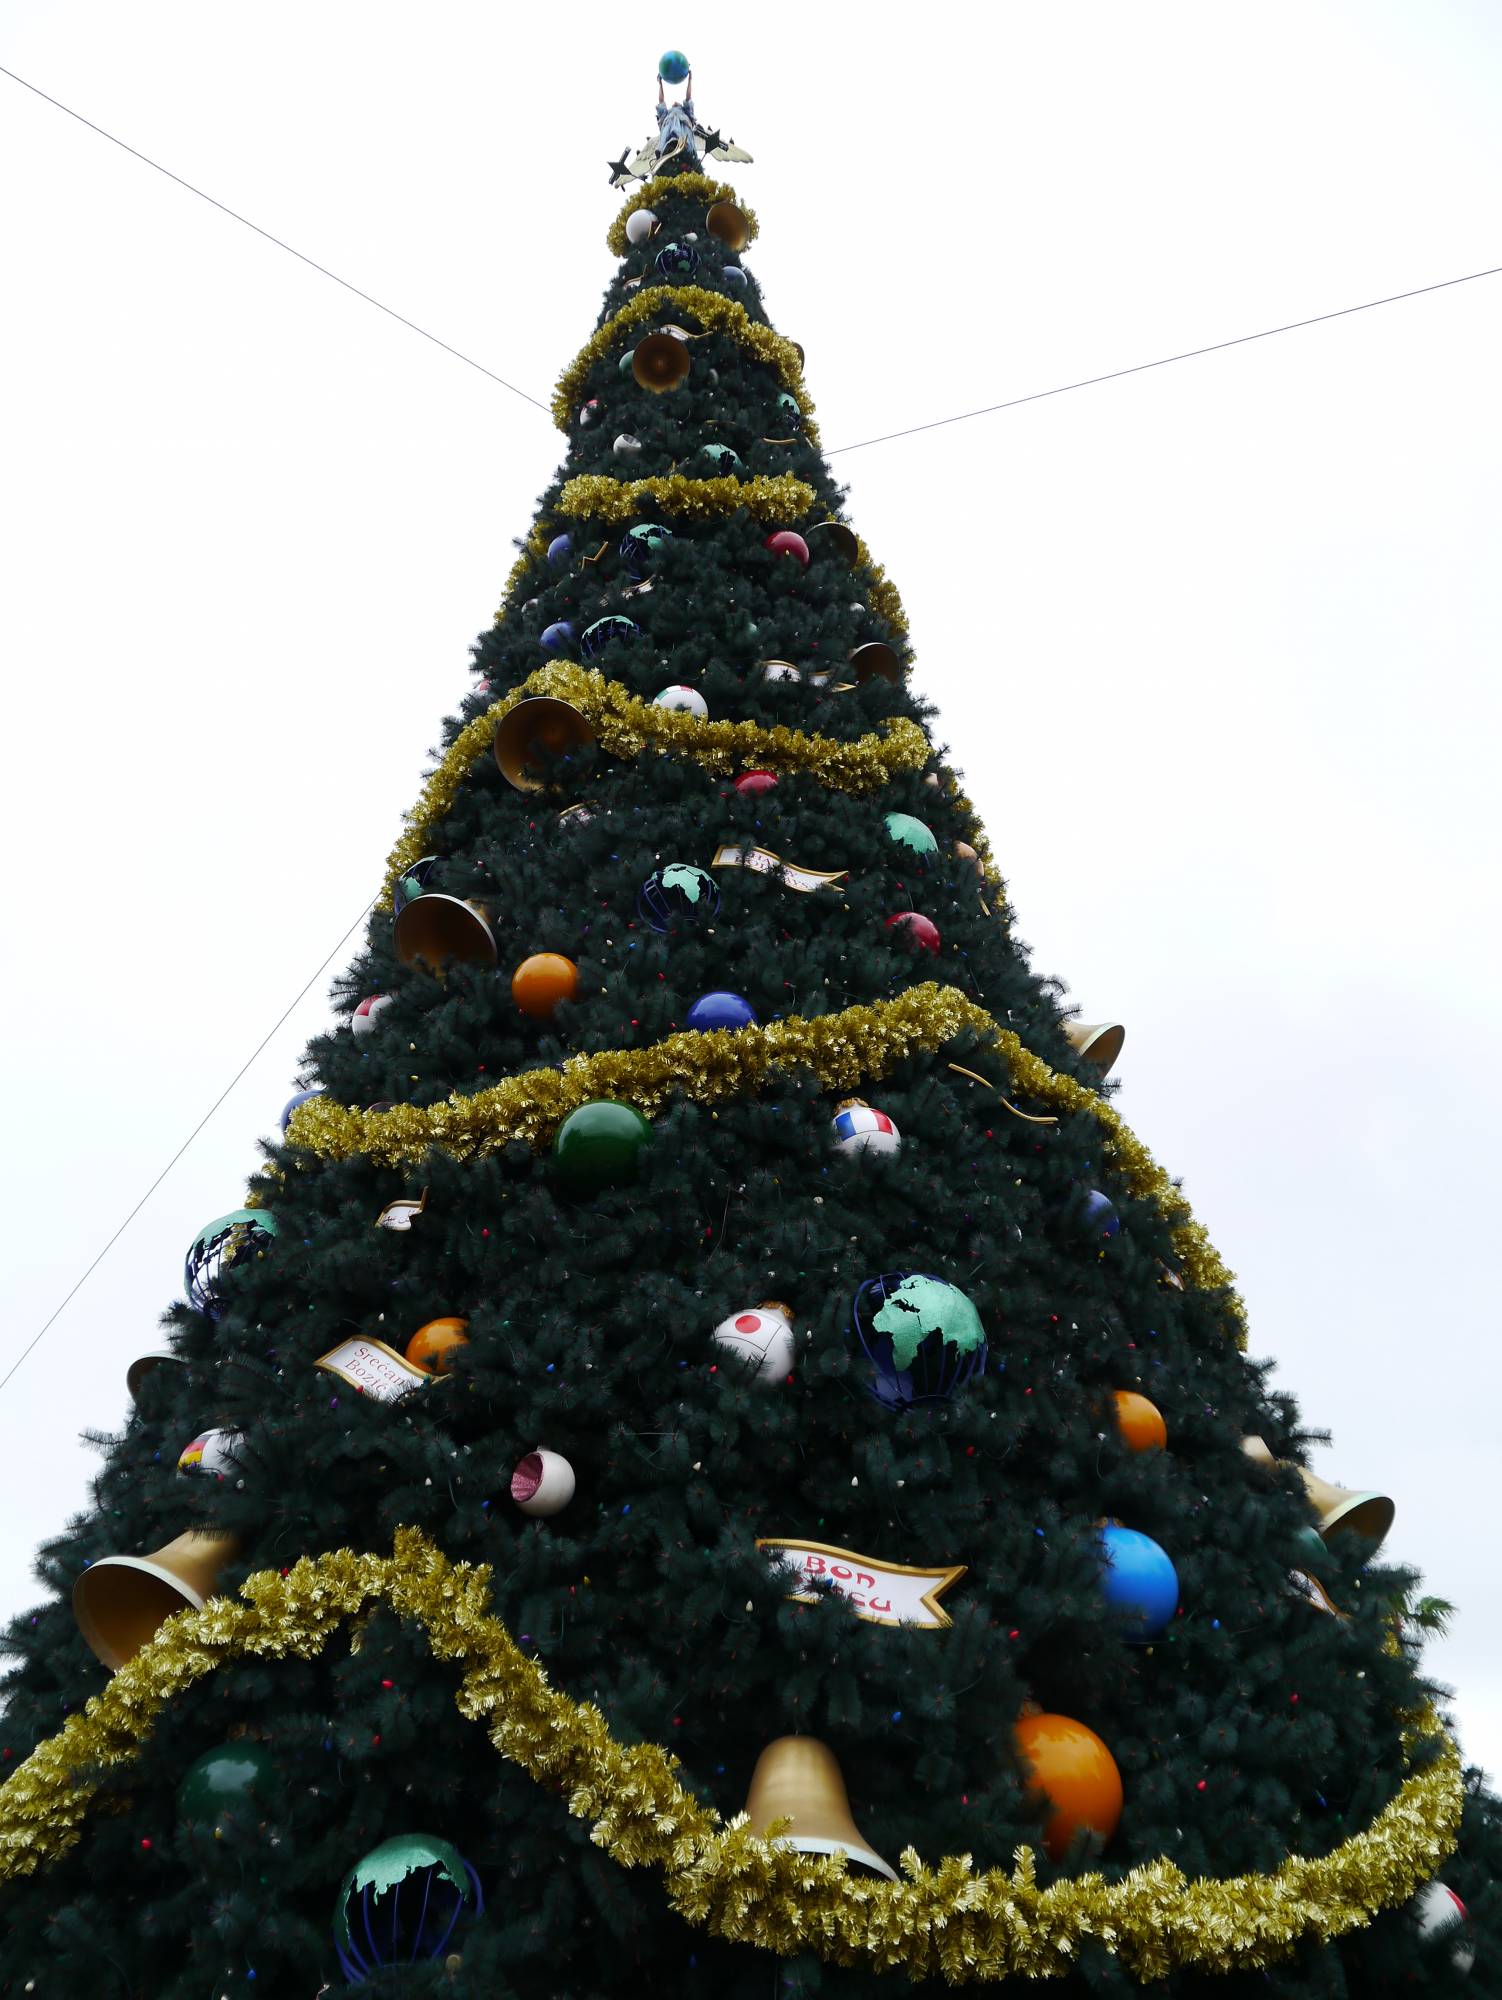 Epcot - Christmas tree